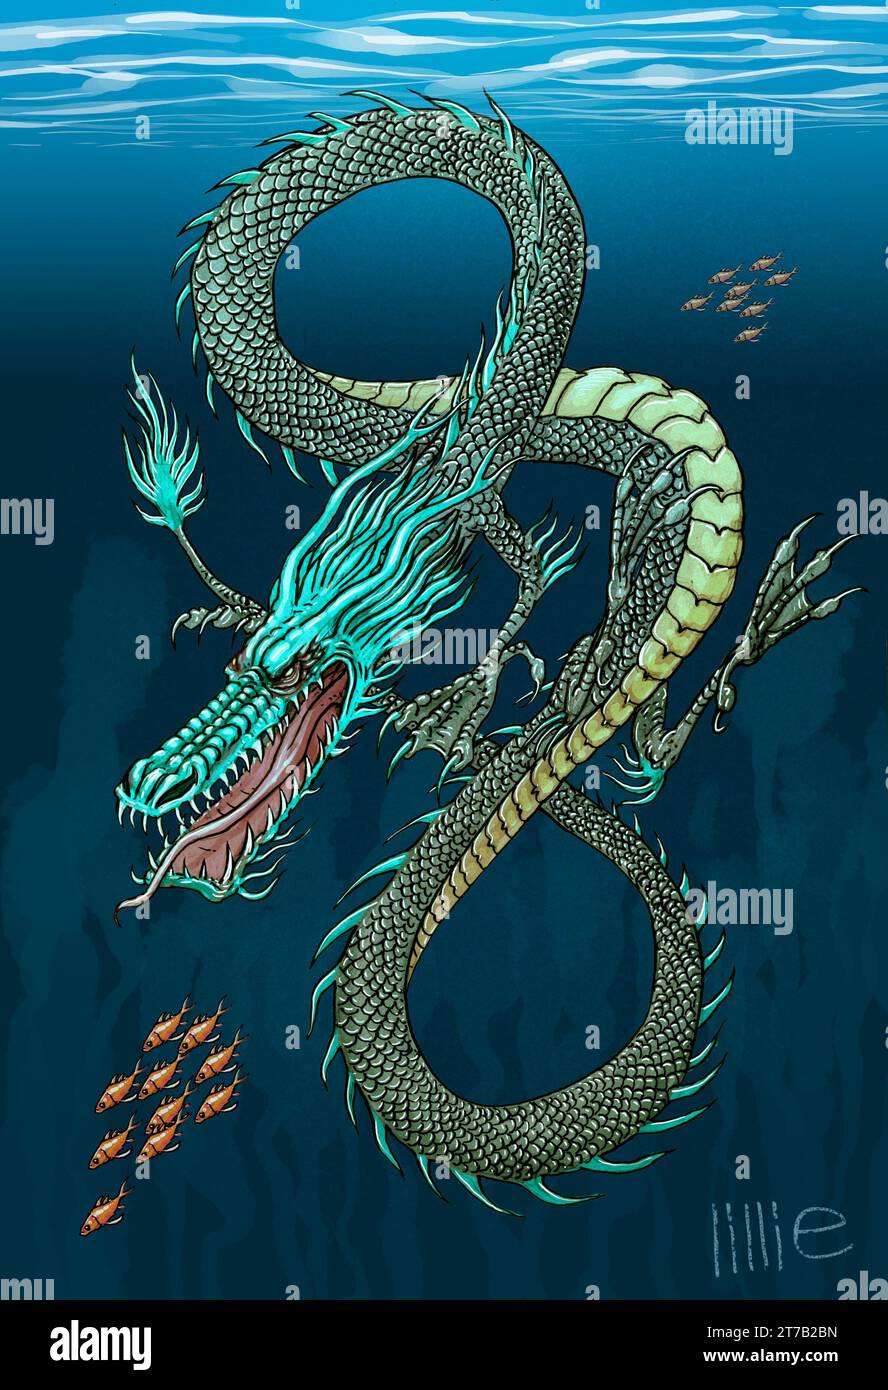 Art, mizuchi (大虬, 蛟龍, 蛟, 美都知), un tipo di drago giapponese o creatura leggendaria simile a un serpente, collegata all'acqua, descritta da alcuni come una divinità dell'acqua. Foto Stock